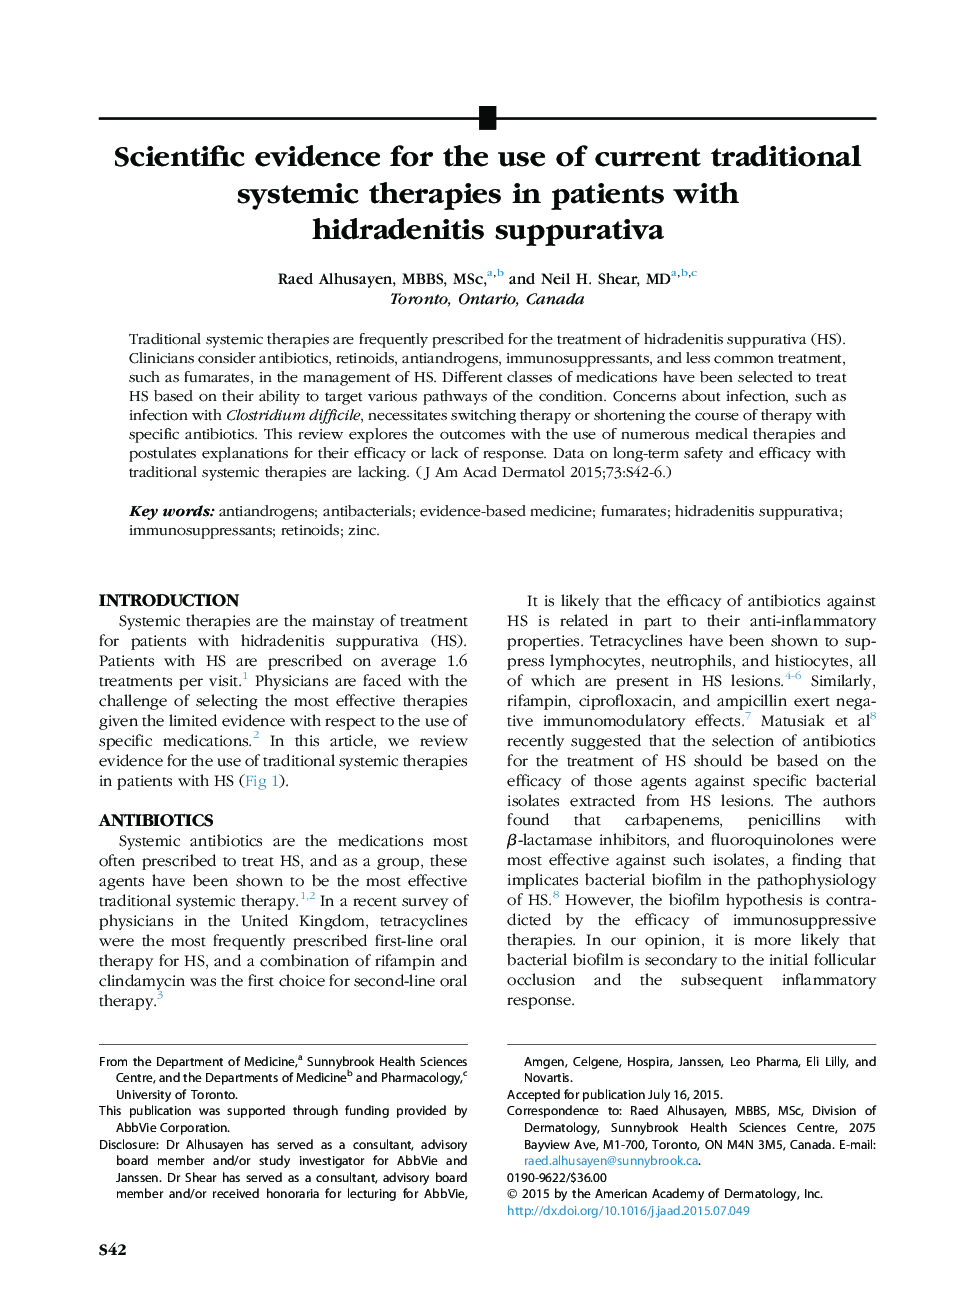 شواهد علمی برای استفاده از درمان های سیستمیک فعلی سنتی در بیماران مبتلا به هیدرادنیت سوپوراتیوا 